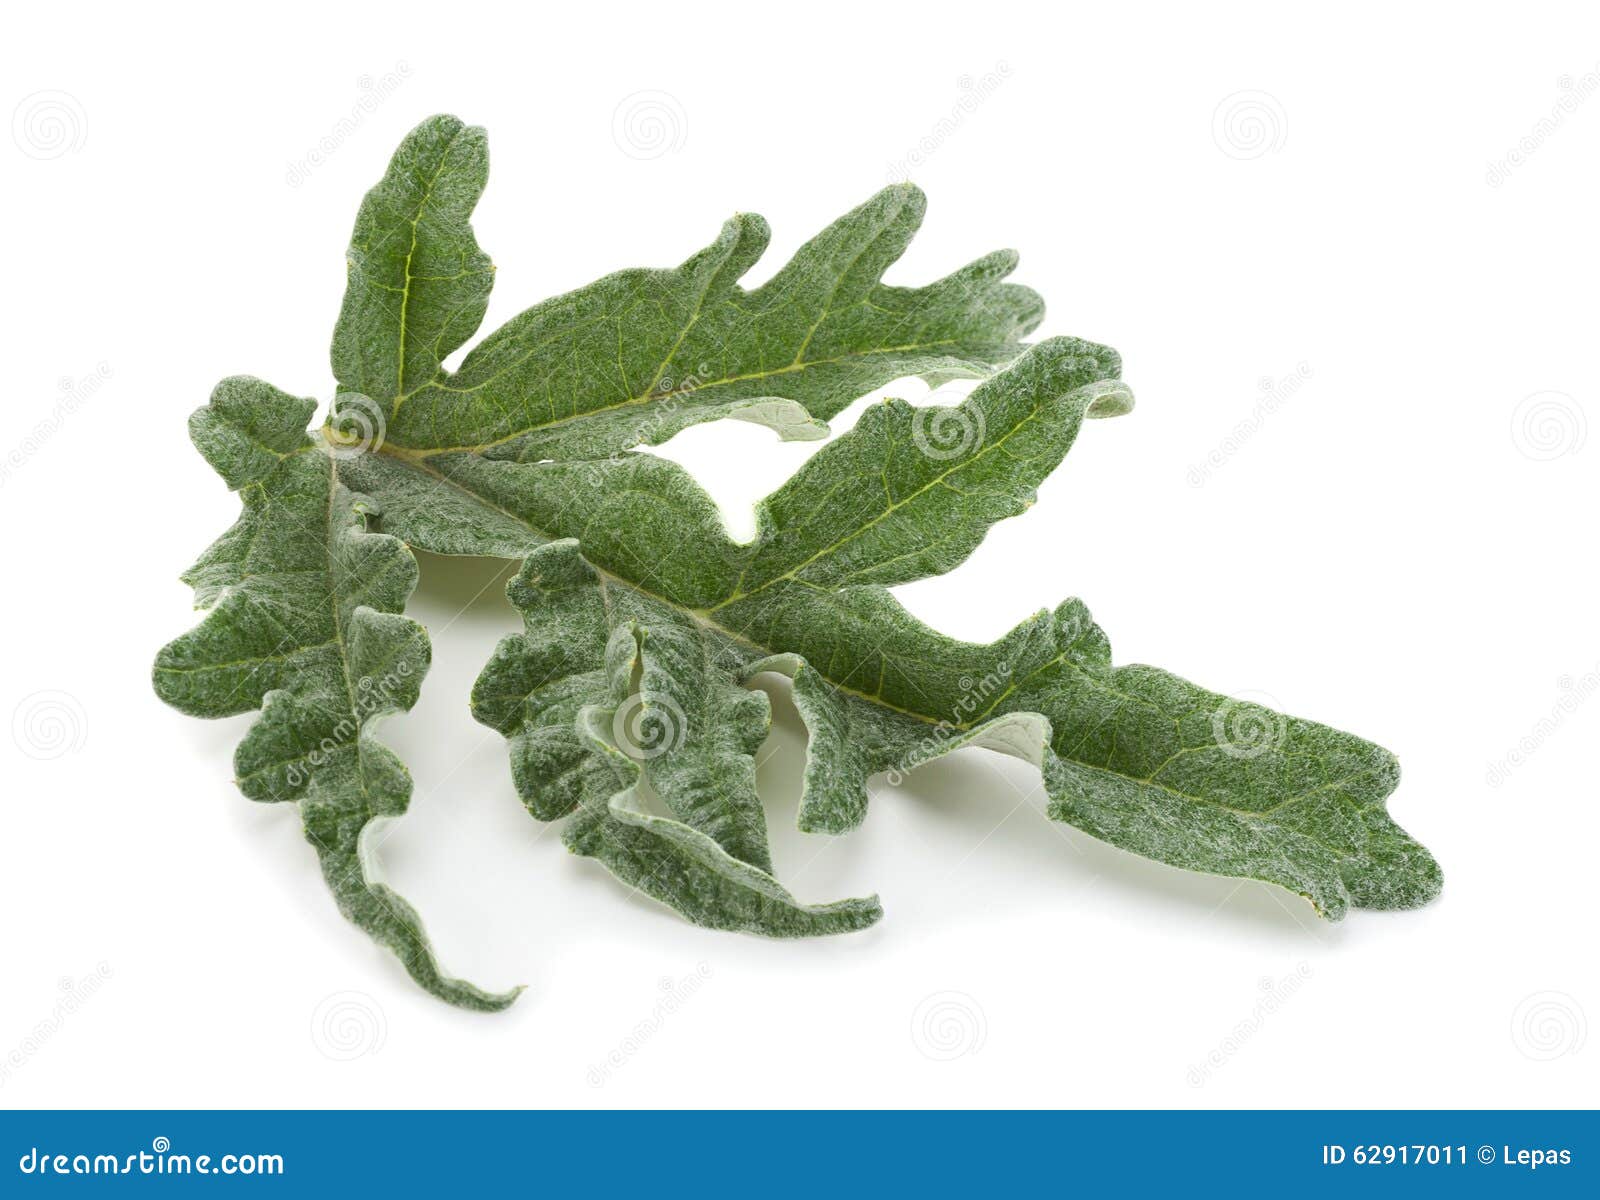 artichoke leaf closeup